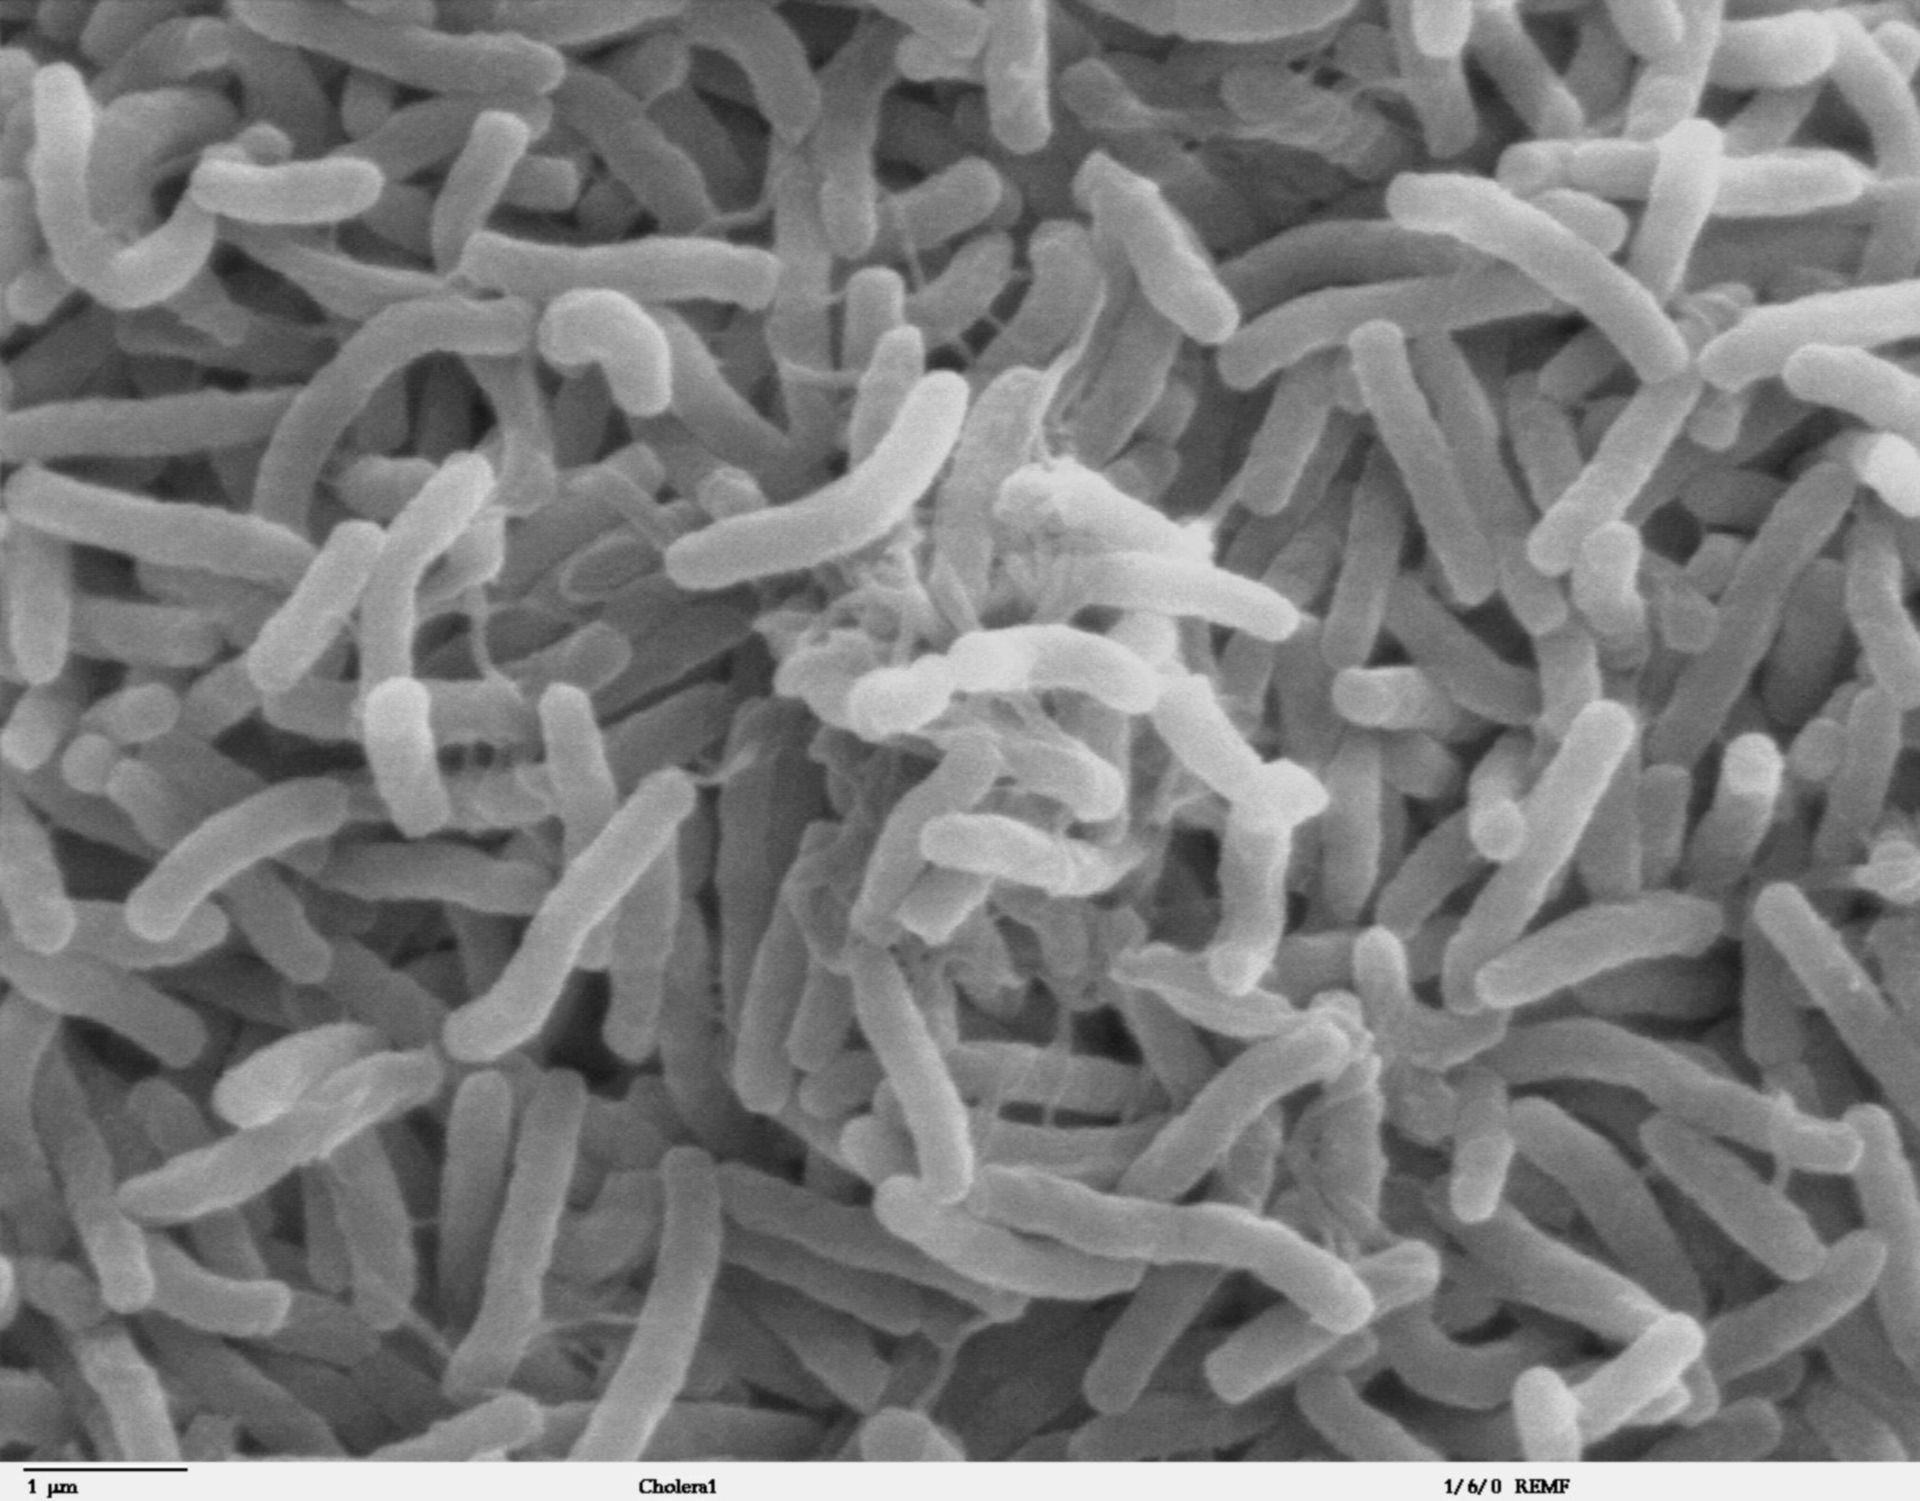 Cholera-Bakterien (Vibrio cholerae, Elektronenmikroskopie)